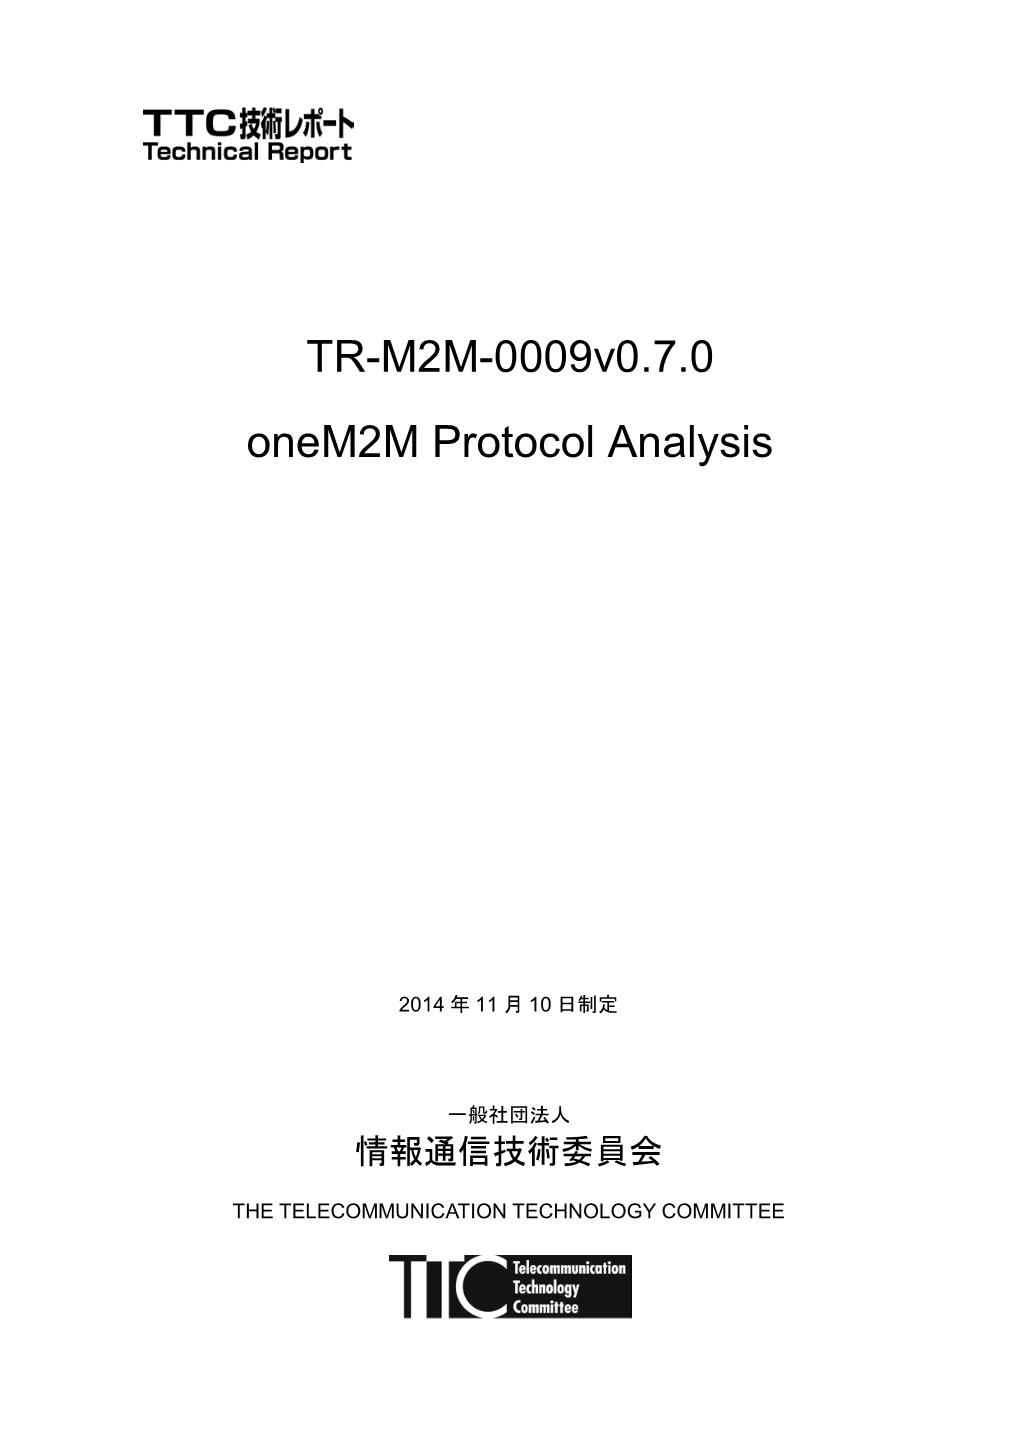 TR-M2M-0009V0.7.0 Onem2m Protocol Analysis